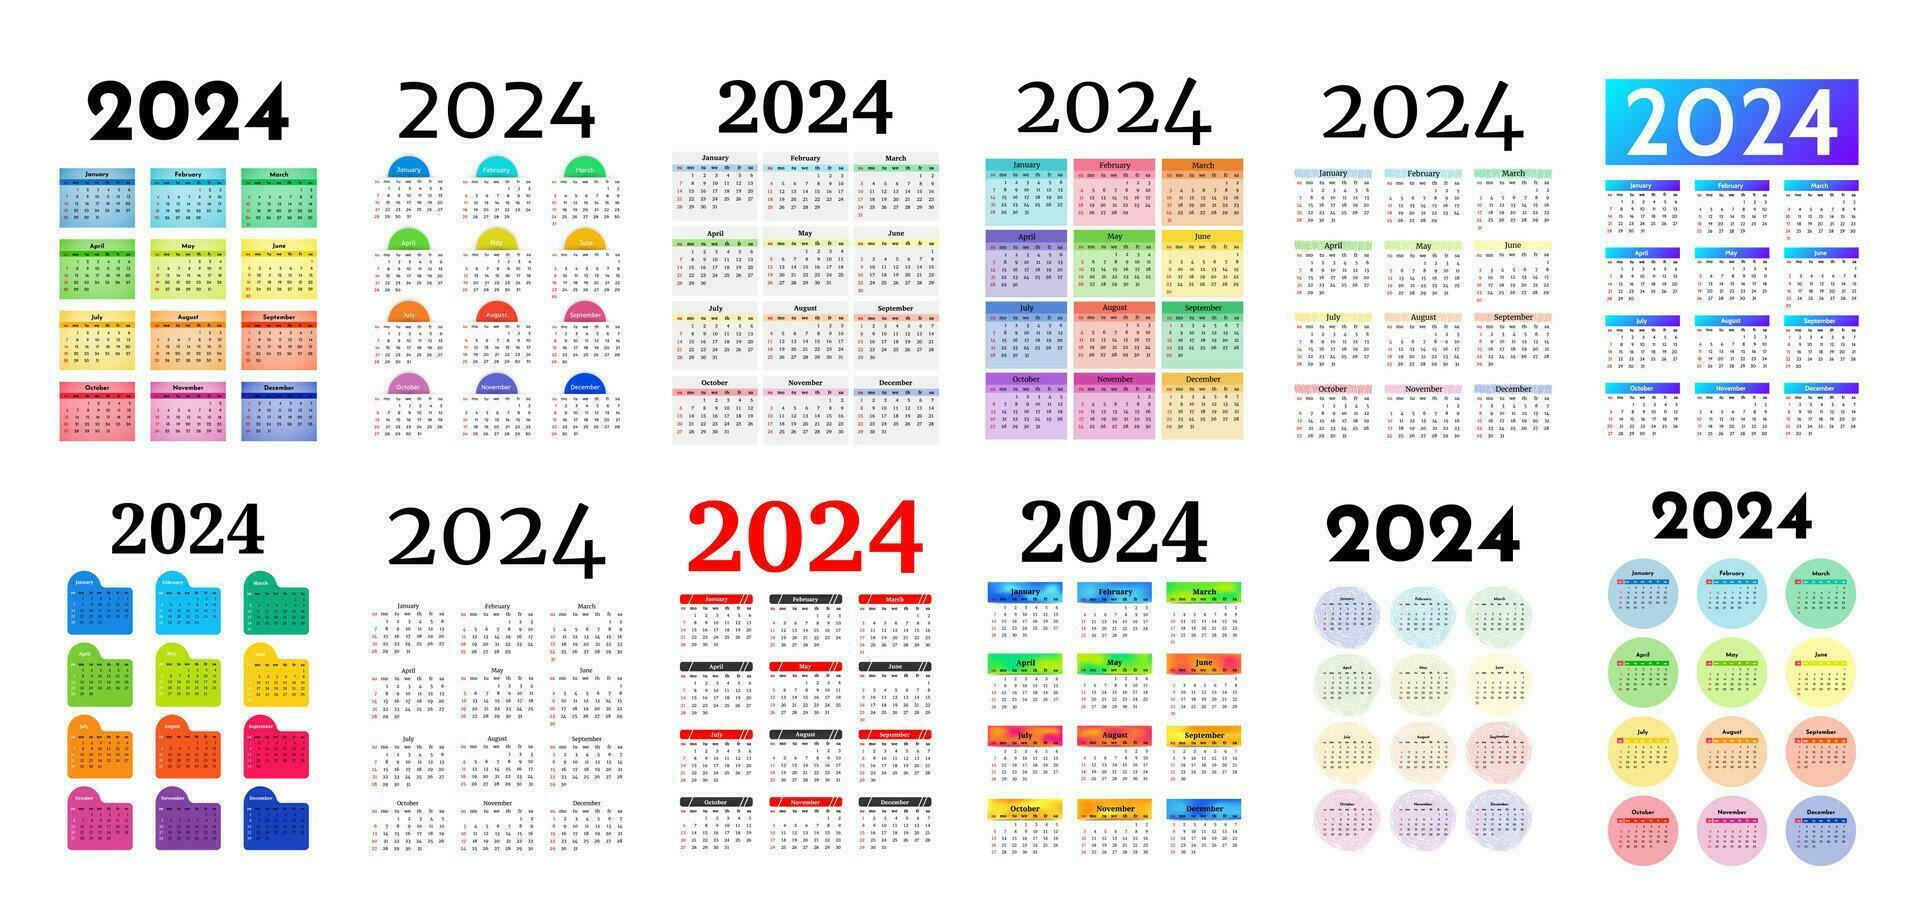 calendrier pour 2024 isolé sur une blanc Contexte vecteur